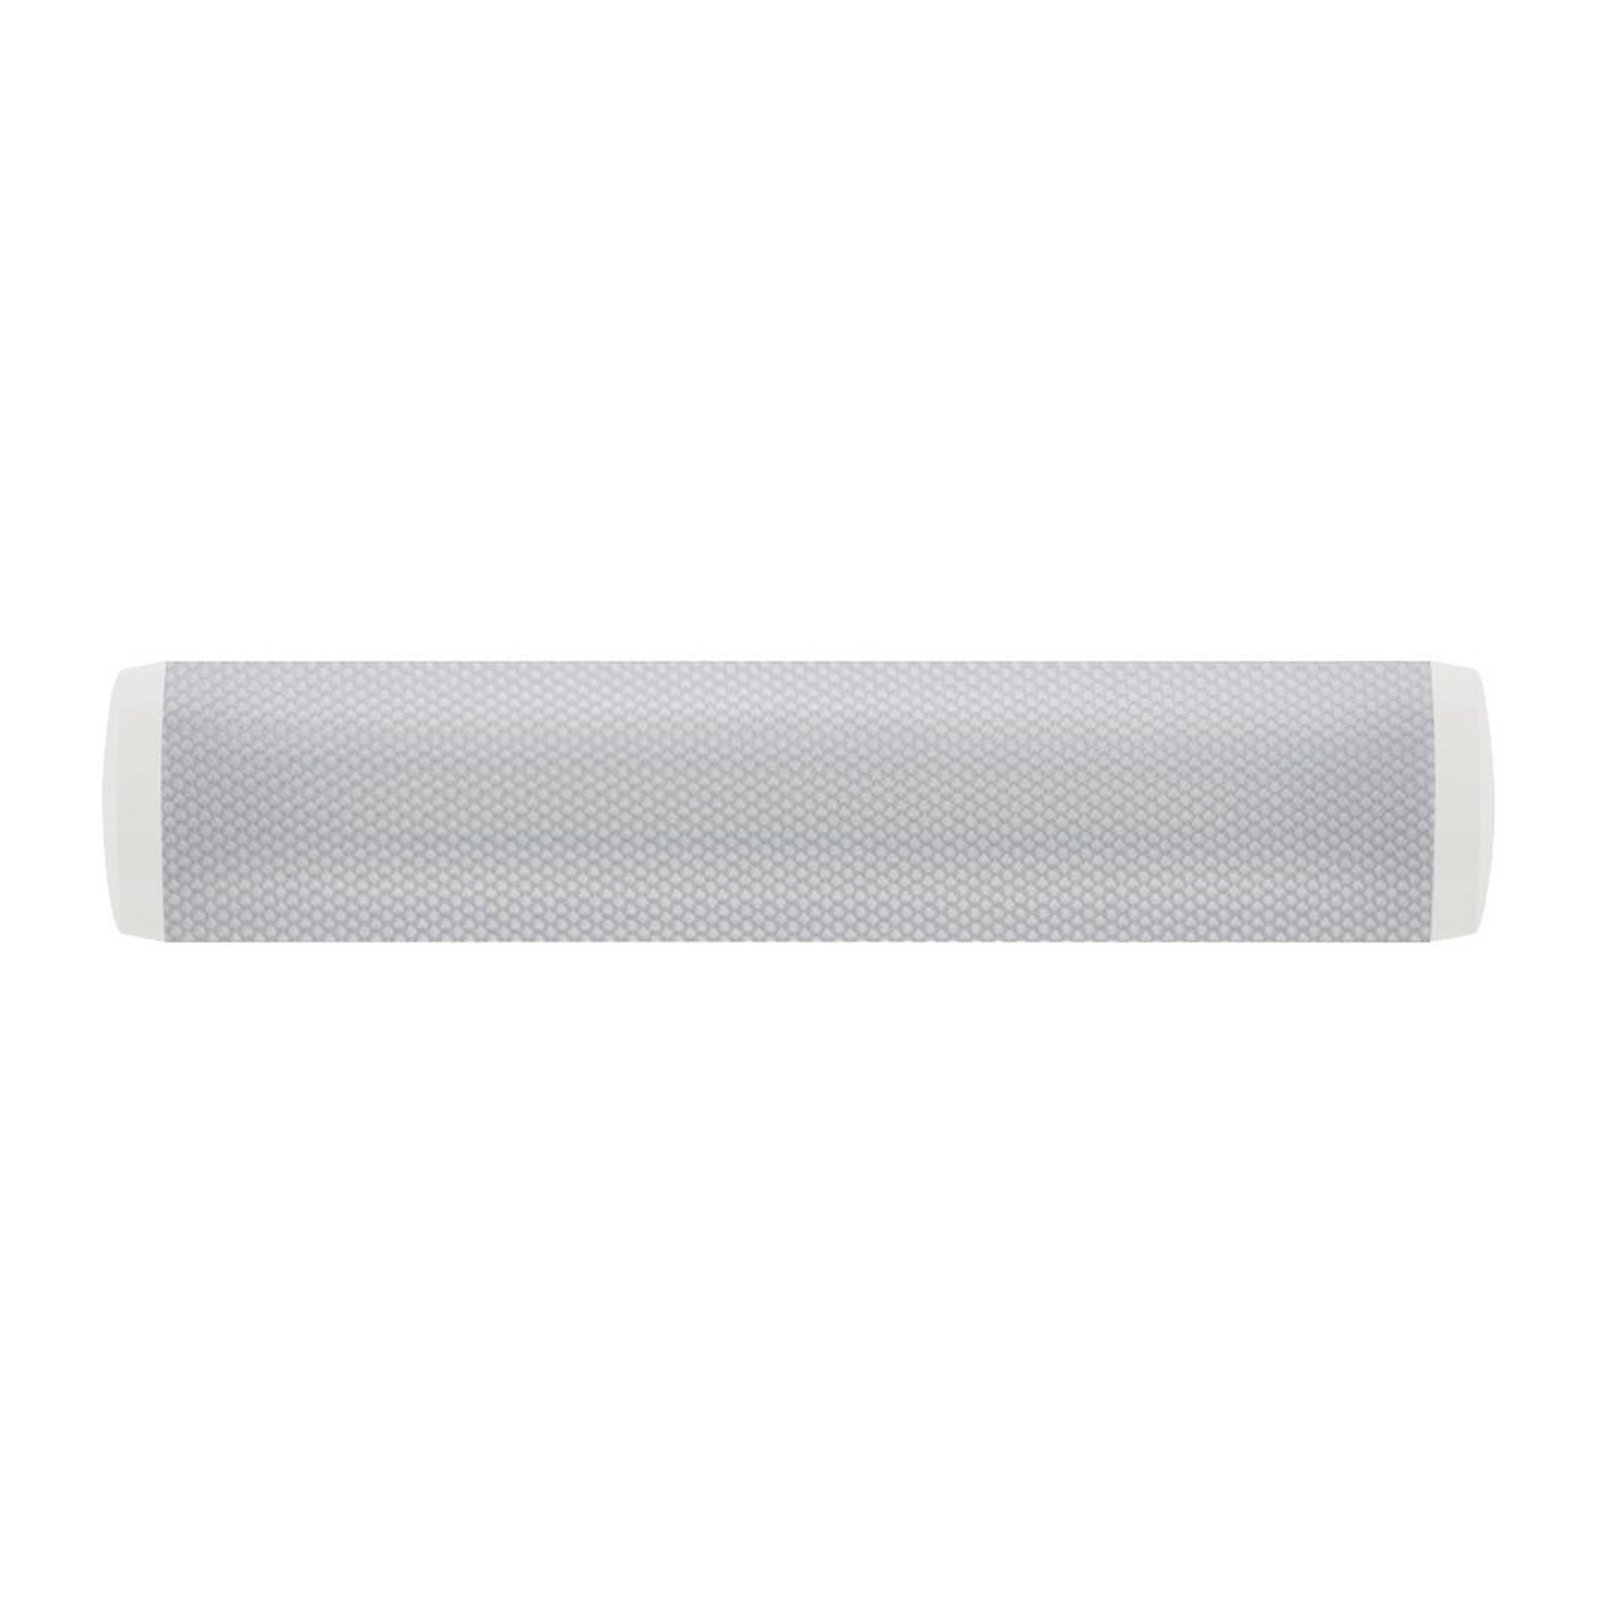 LED stropní svítidlo Artemis, délka 67 cm